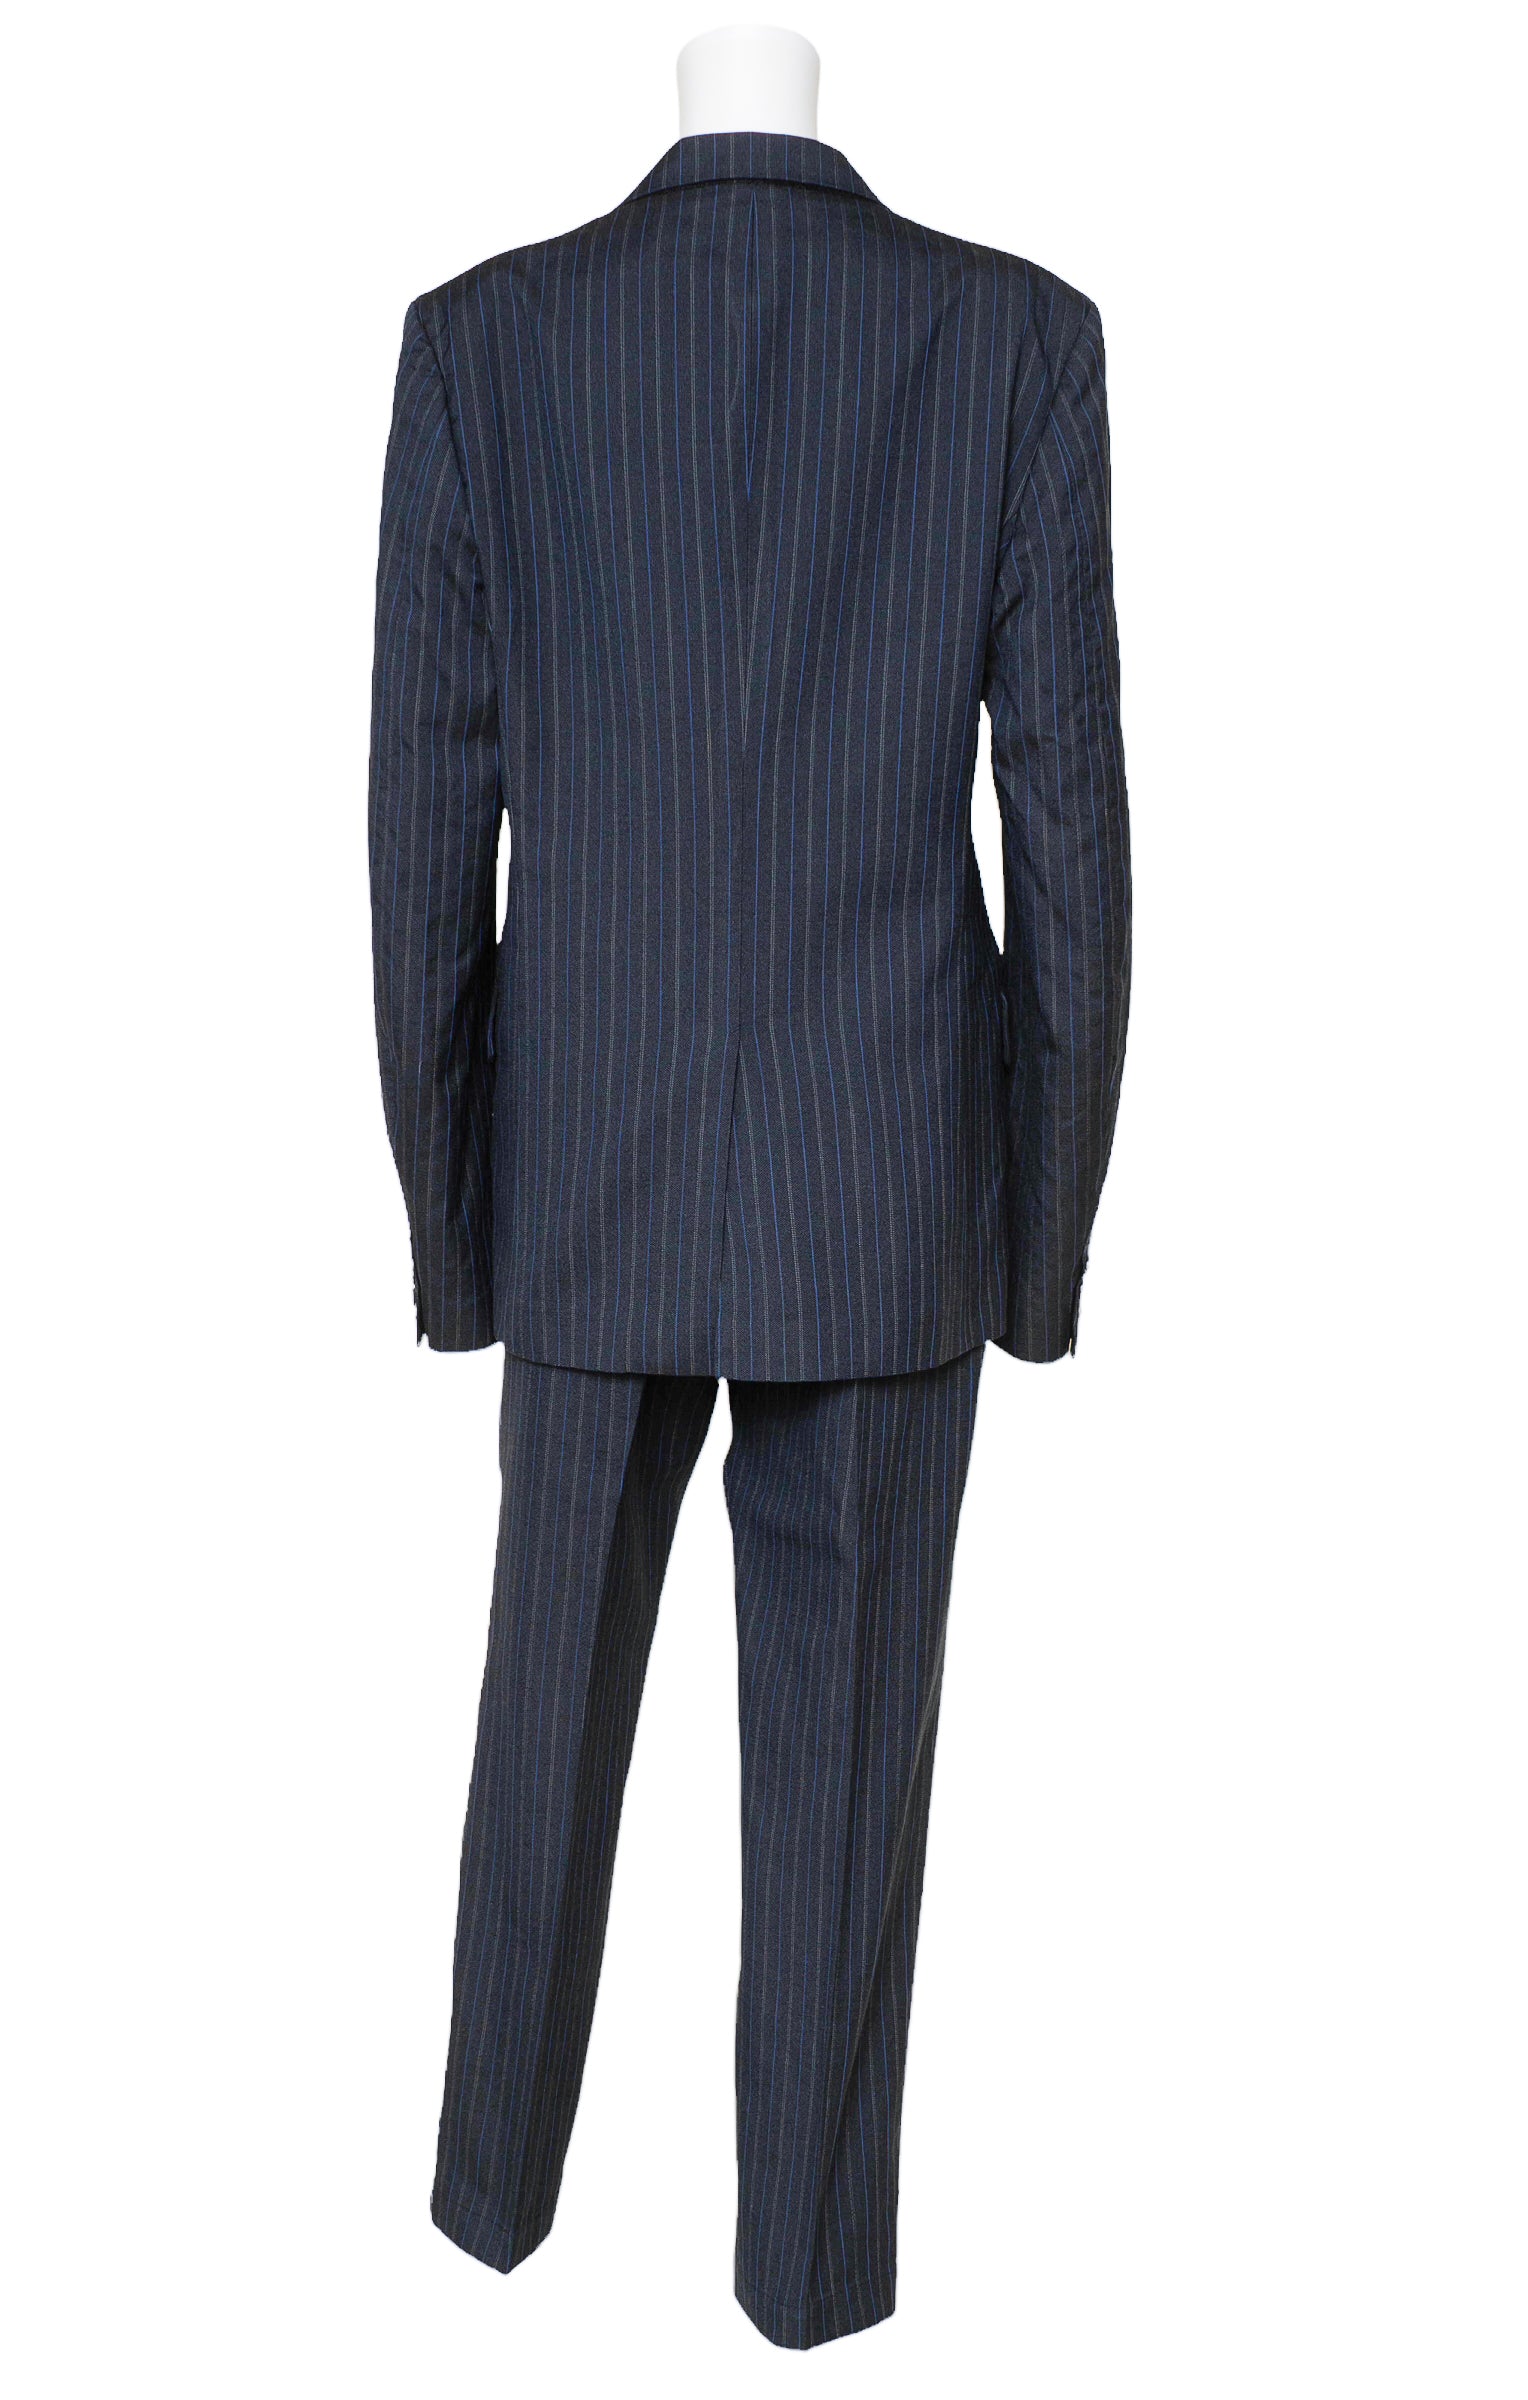 JUNYA WATANABE COMME DES GARÇONS (RARE) Suit Size: Men's L / Fits like Women's XL